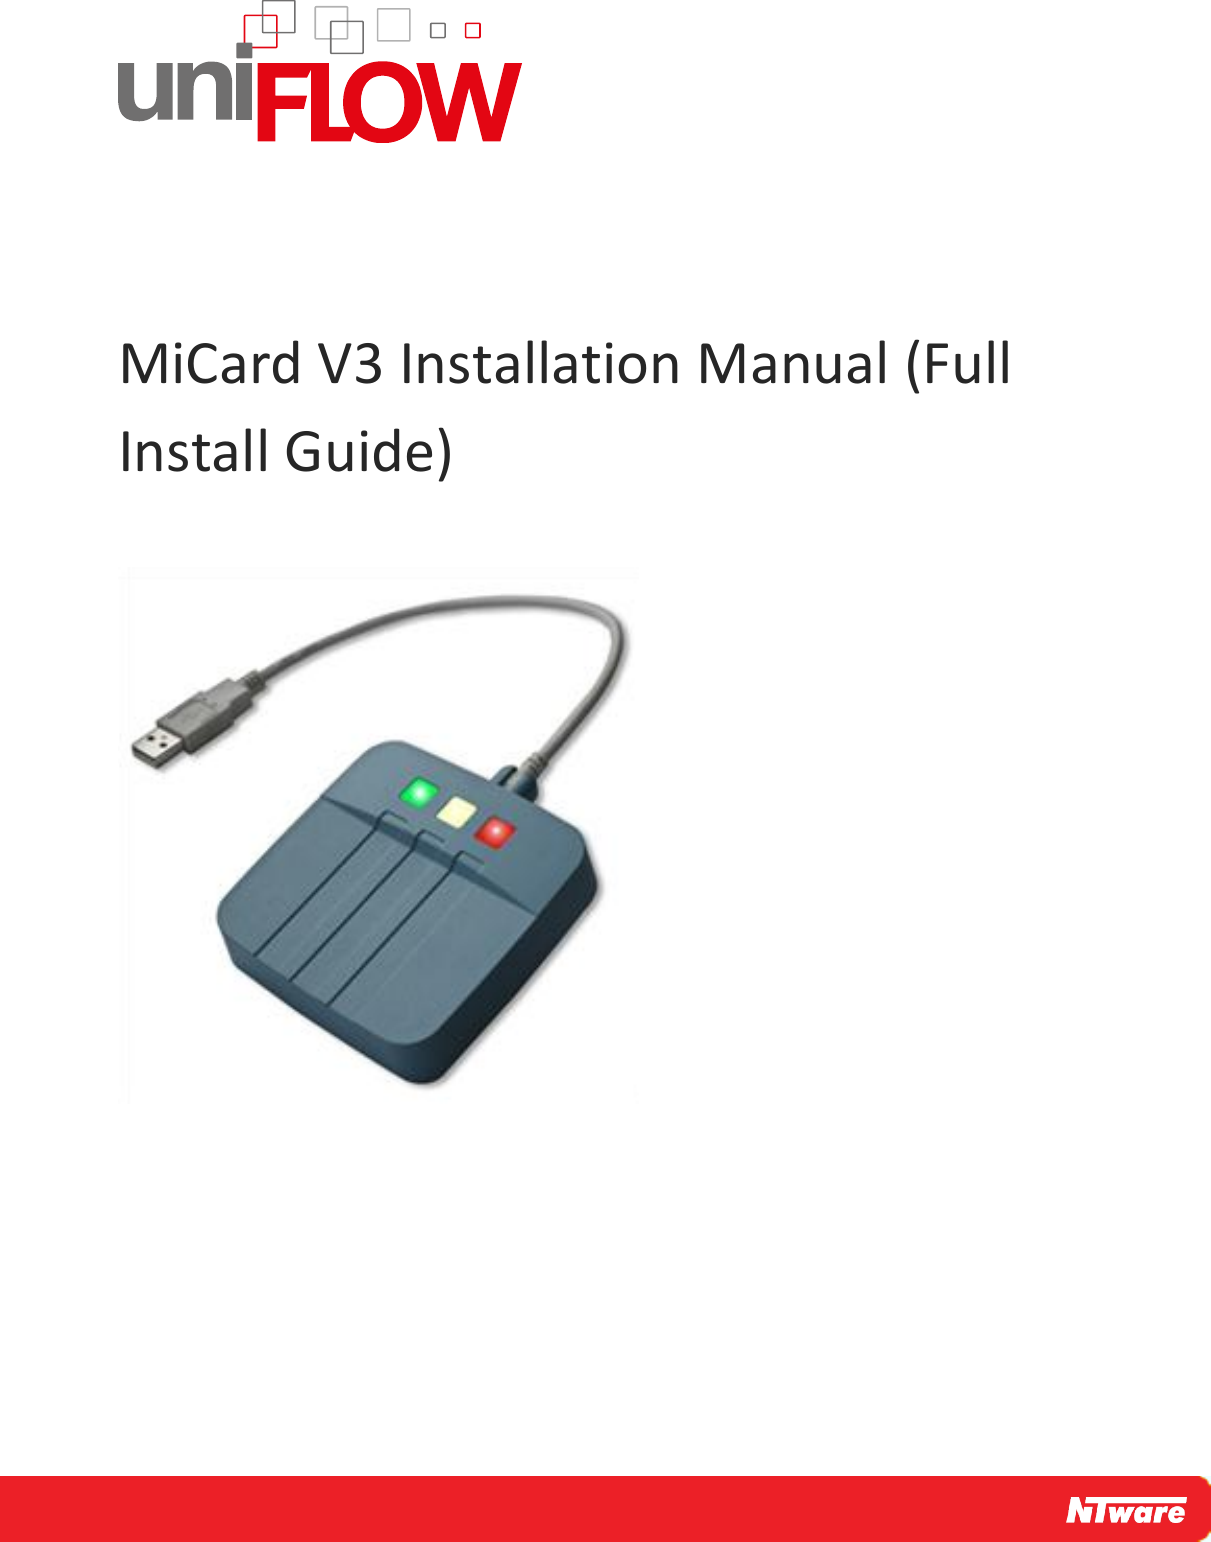     MiCard V3 Installation Manual (Full Install Guide)    